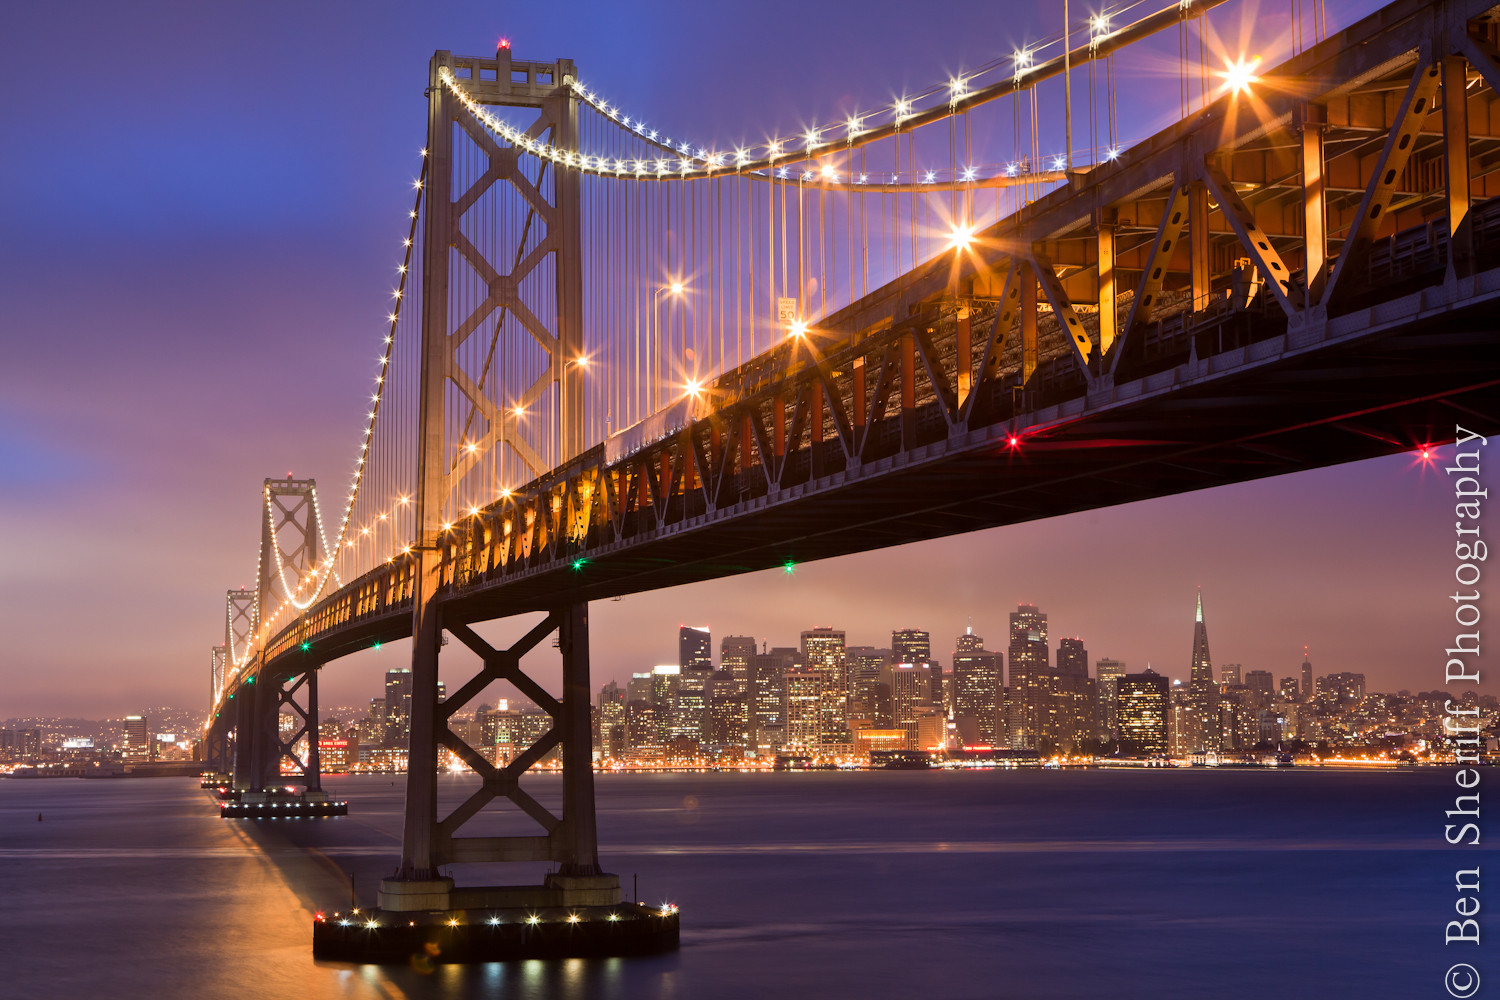 Best ideas about San Francisco Landscape
. Save or Pin Landscape Now.